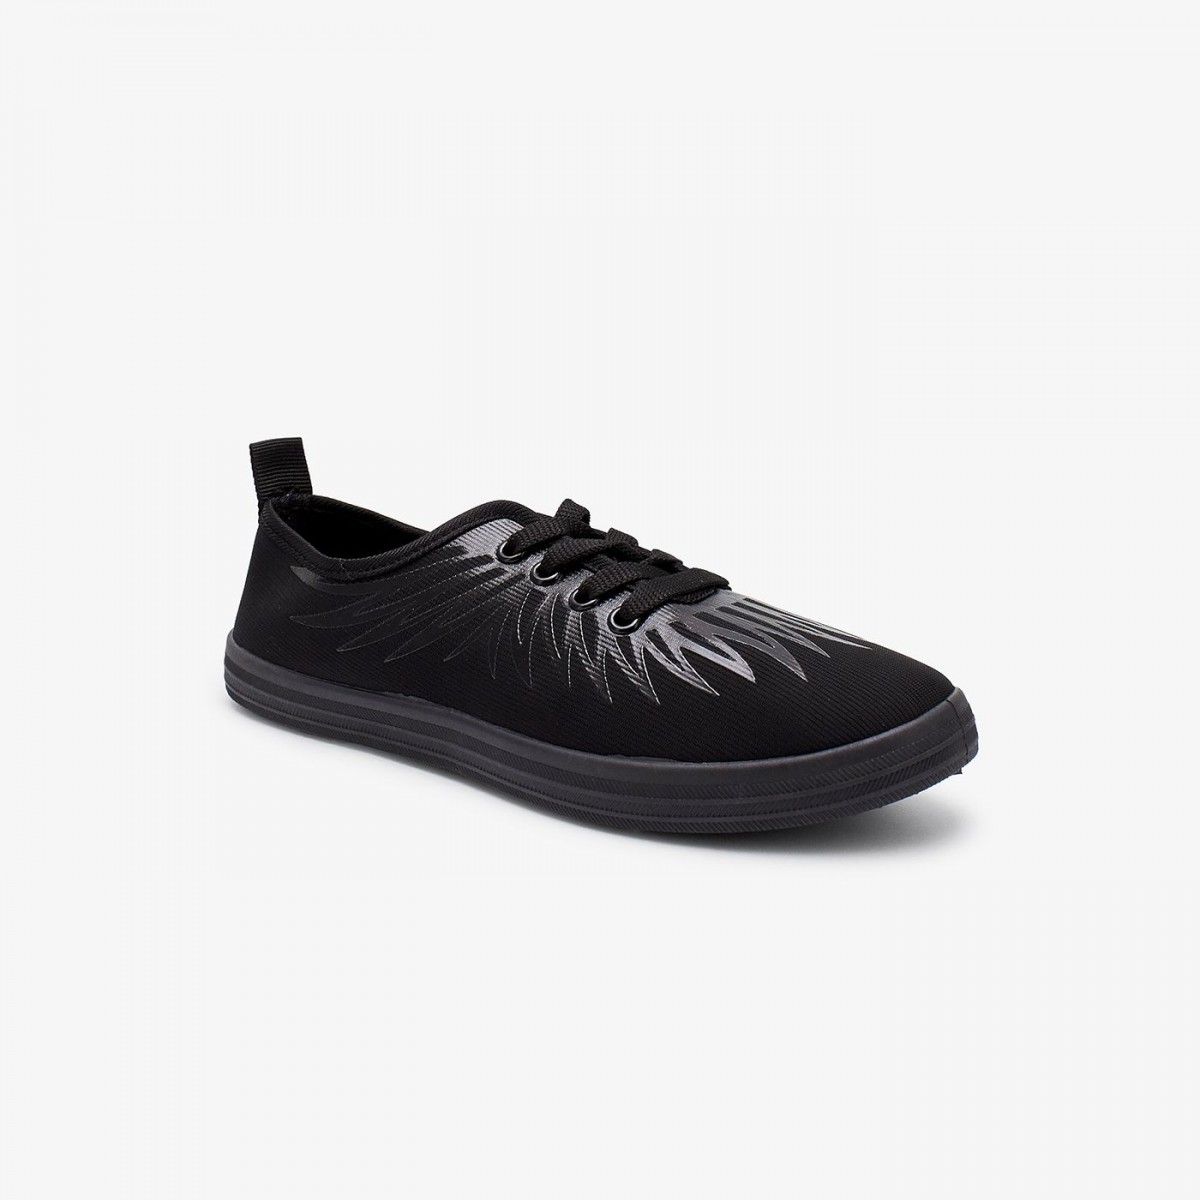 /2019/08/liza-womens-running-shoes-lz-zs-0007-black-image1.jpeg